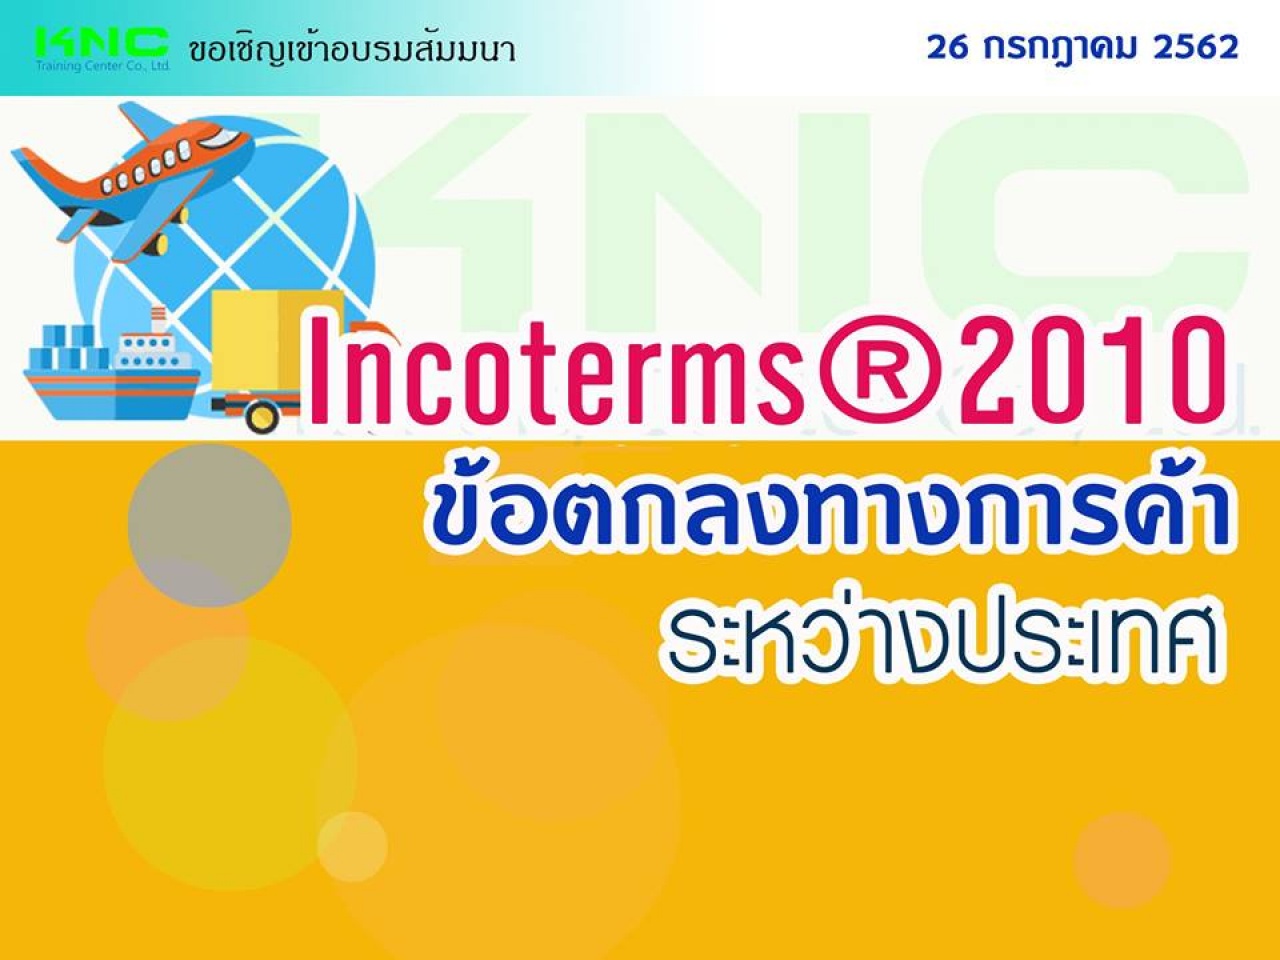 Incoterms ® 2010 ข้อตกลงการค้าระหว่างประเทศ